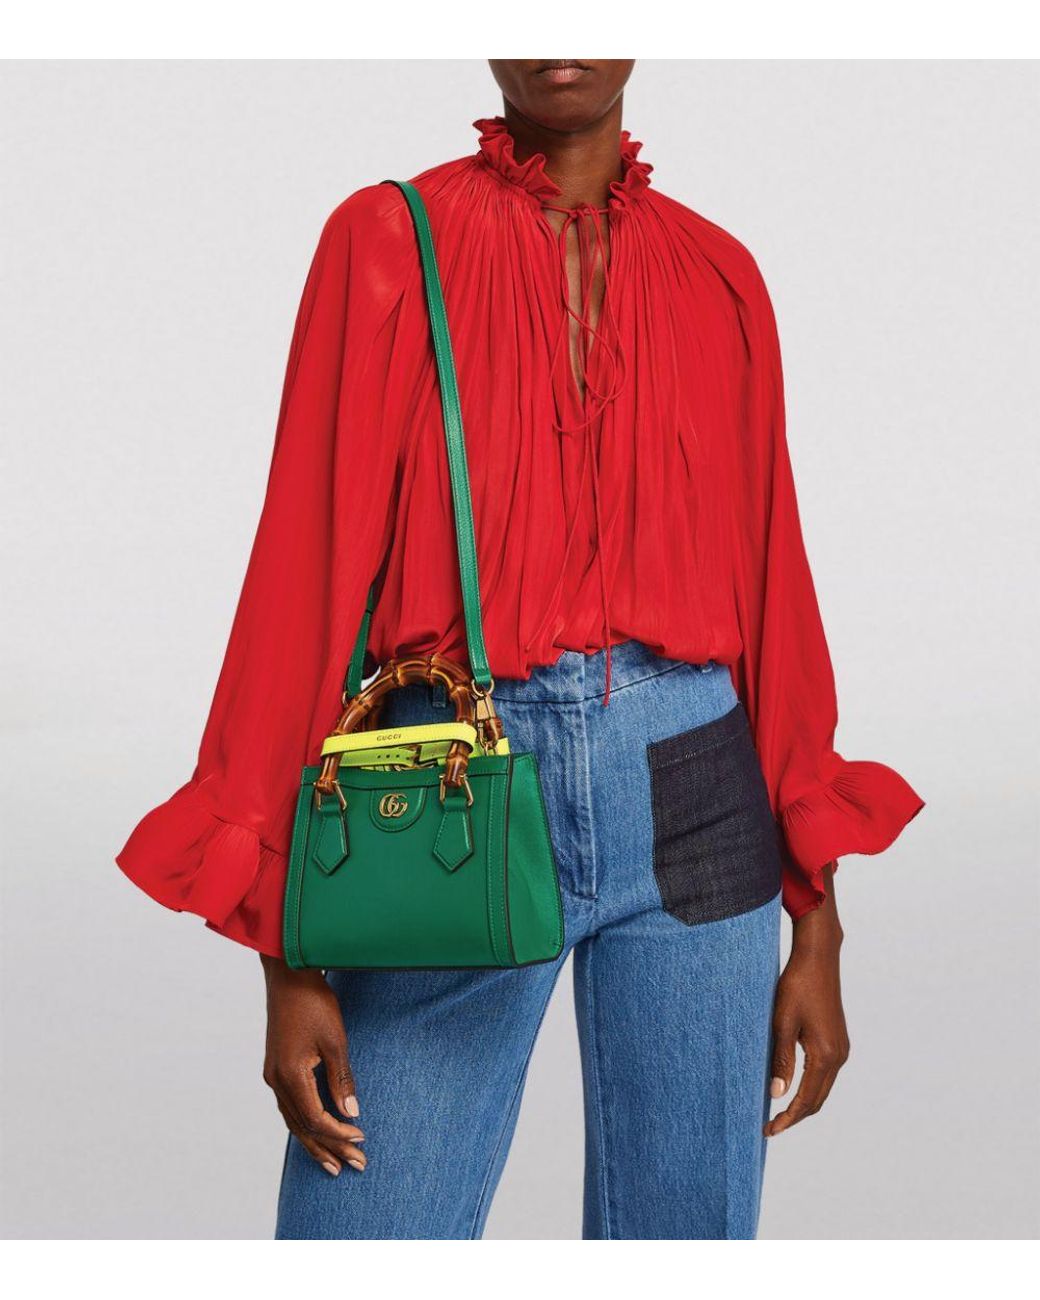 Gucci Diana mini tote bag in cuir leather